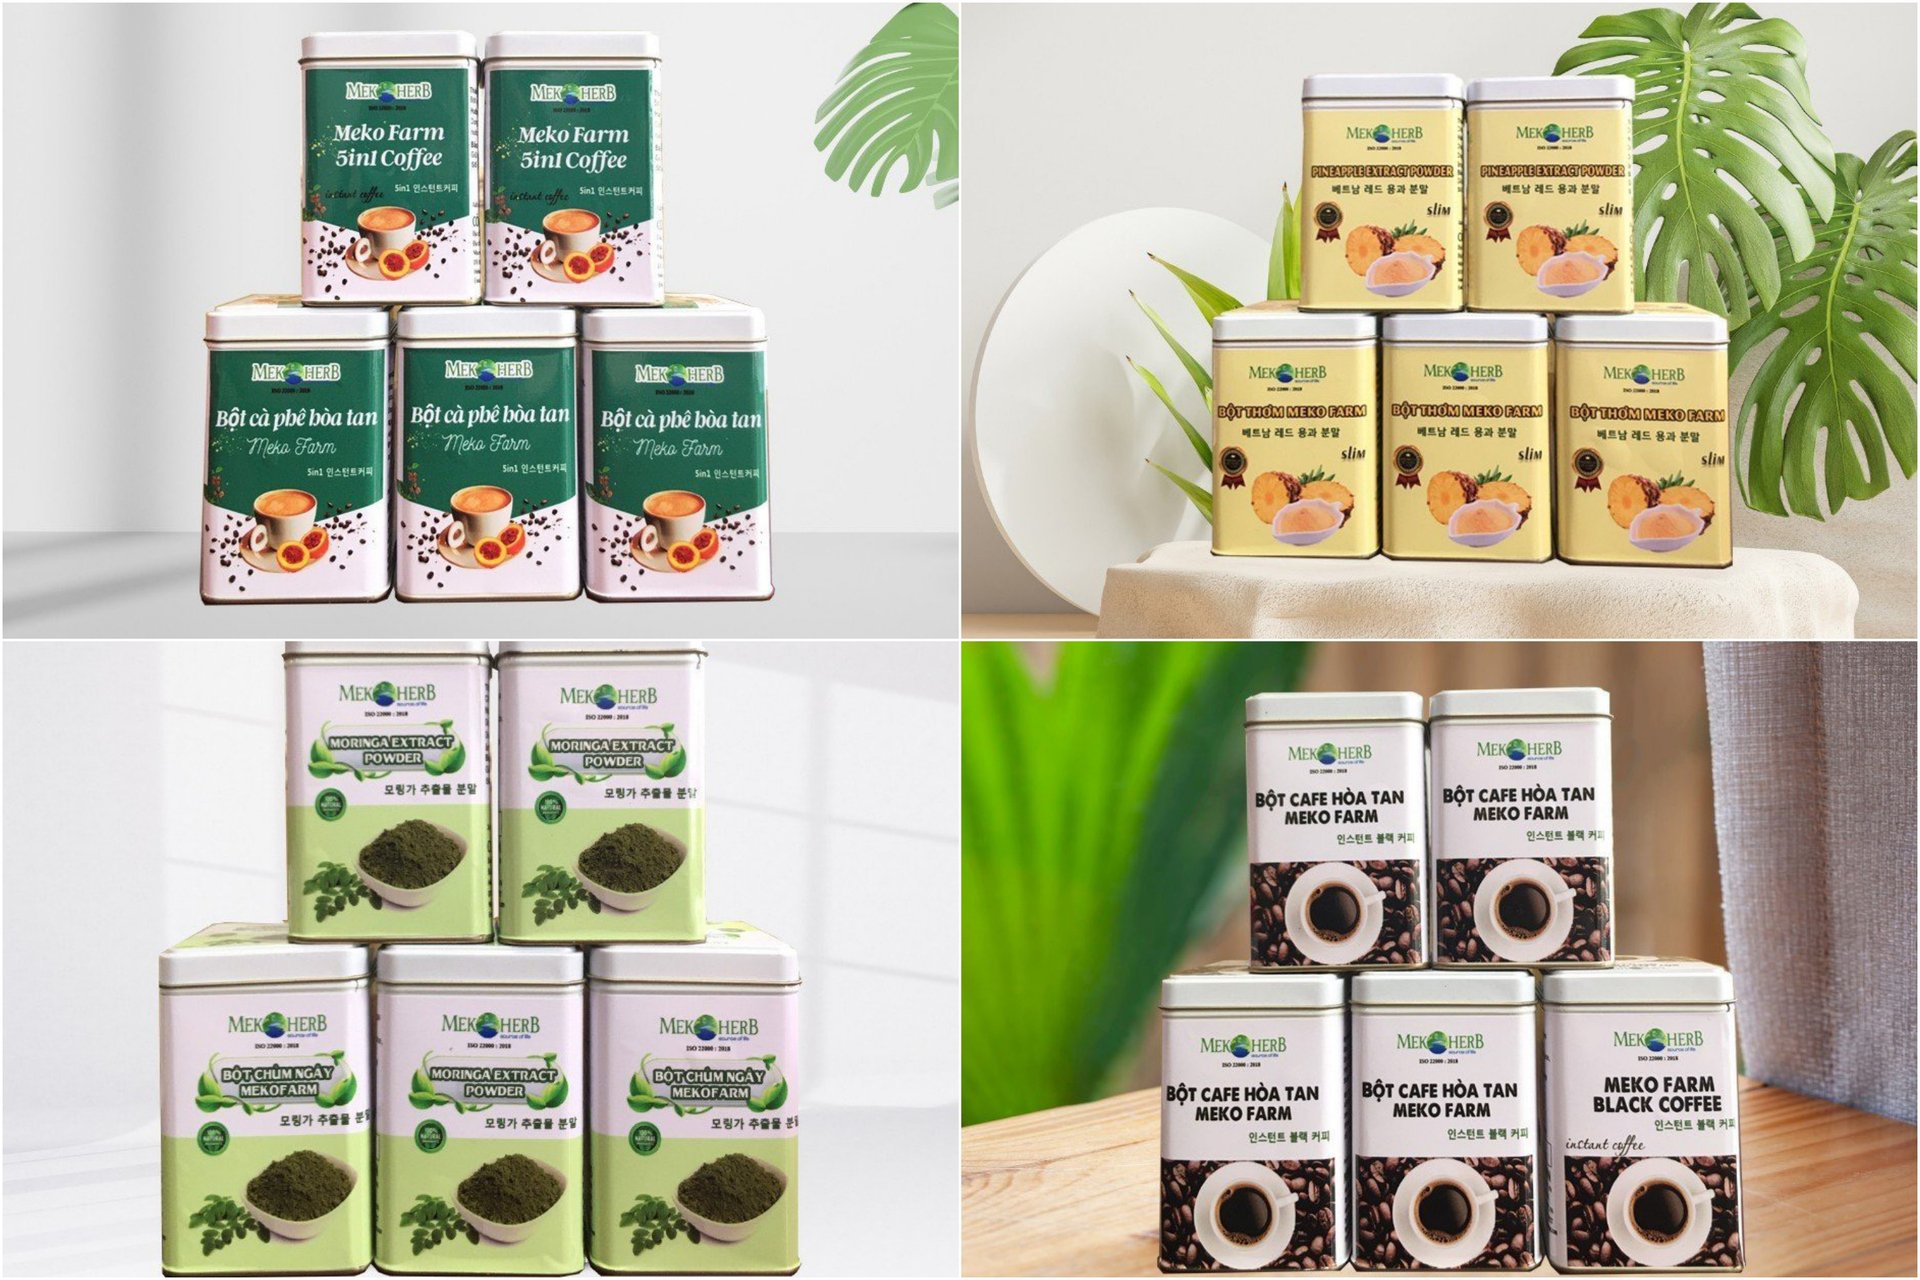 Các sản phẩm  do Mekong Herbals sản xuất và đóng gói đều tuân thủ nghiêm ngặt các tiêu chí chất lượng.